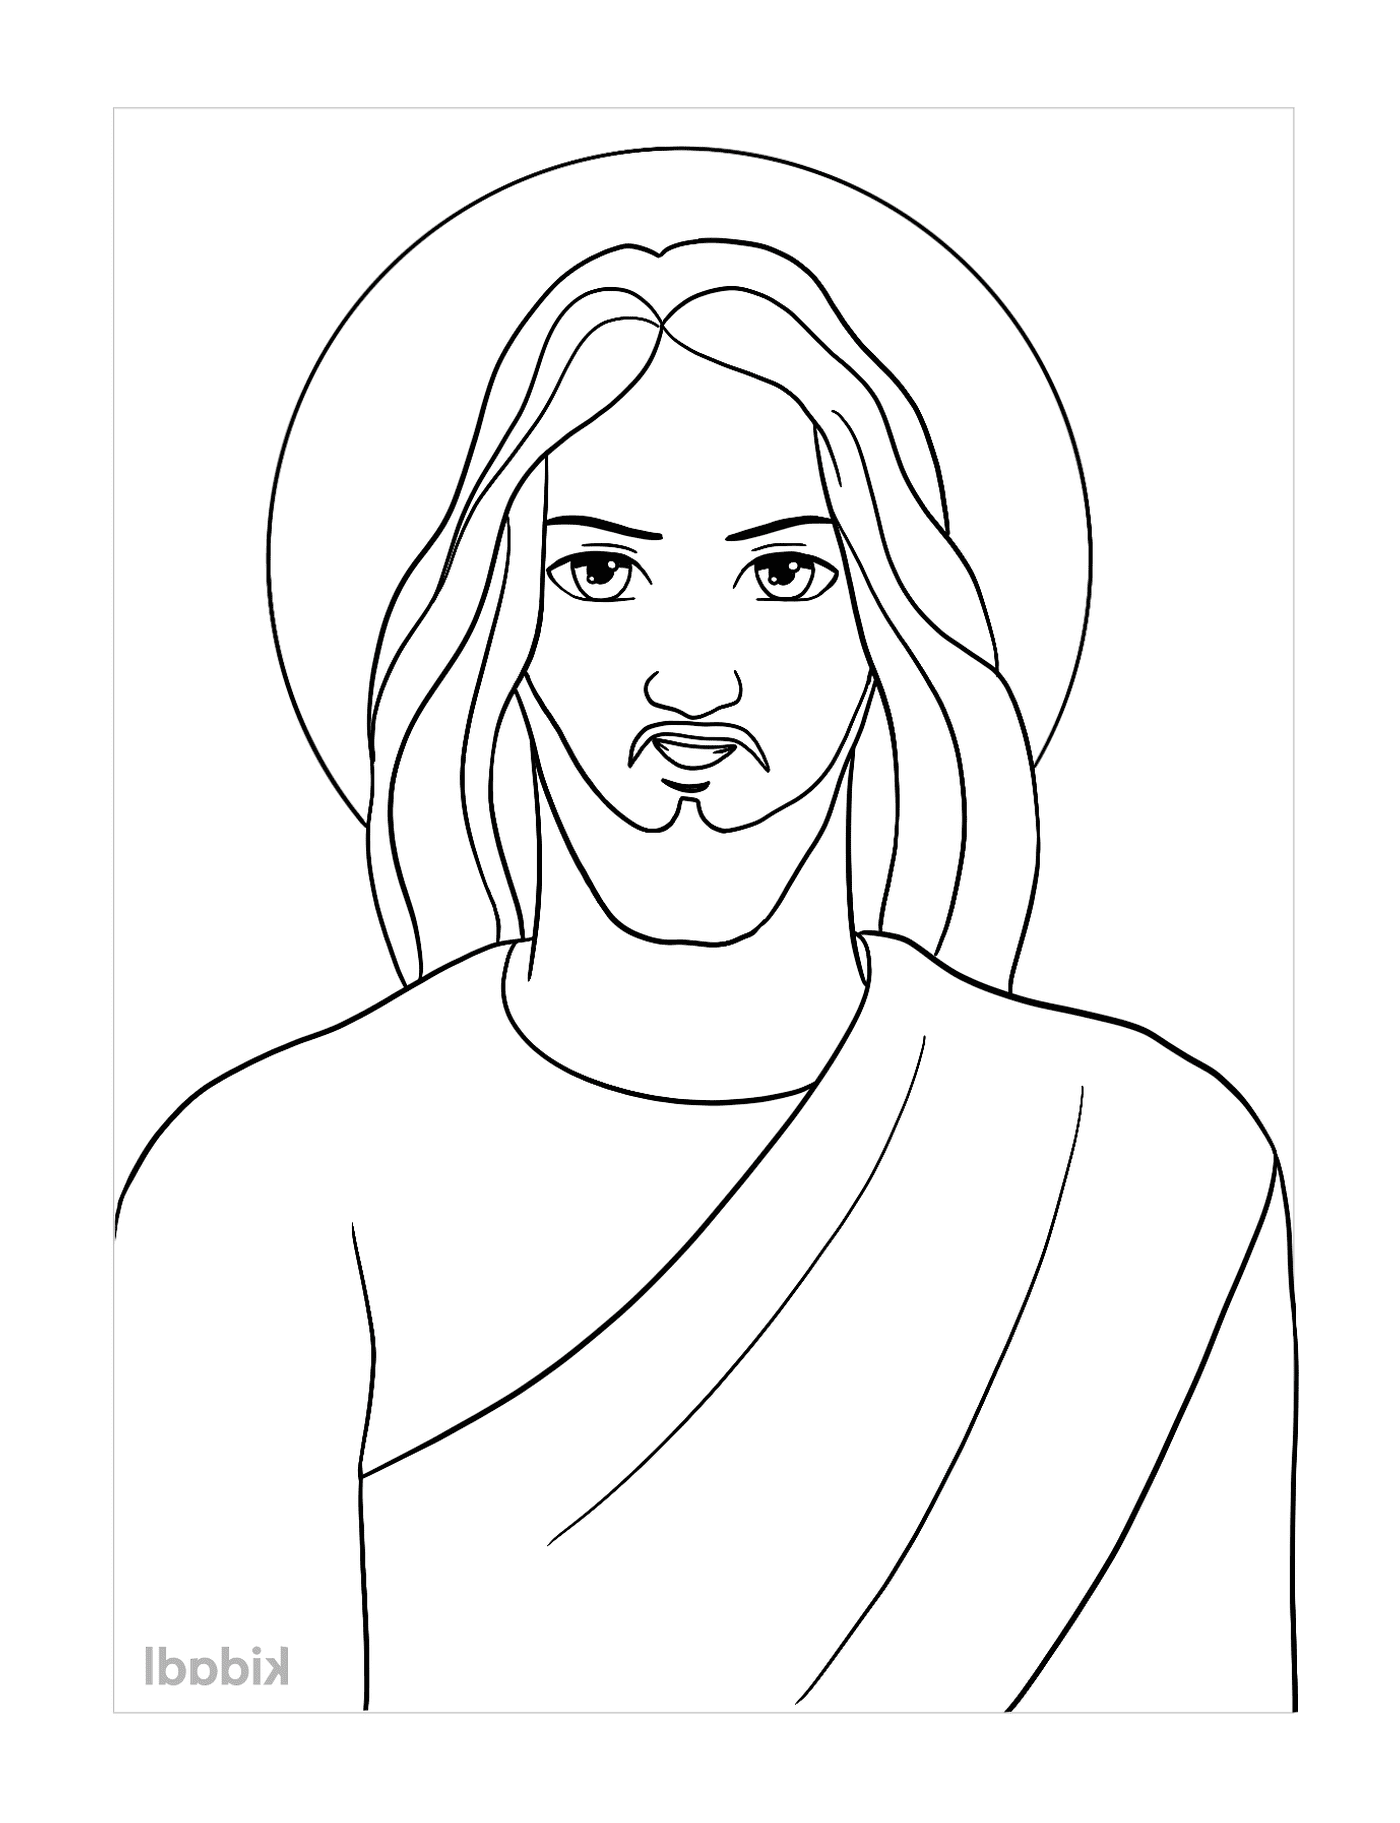   Jésus en dessin animé, un homme avec une barbe 